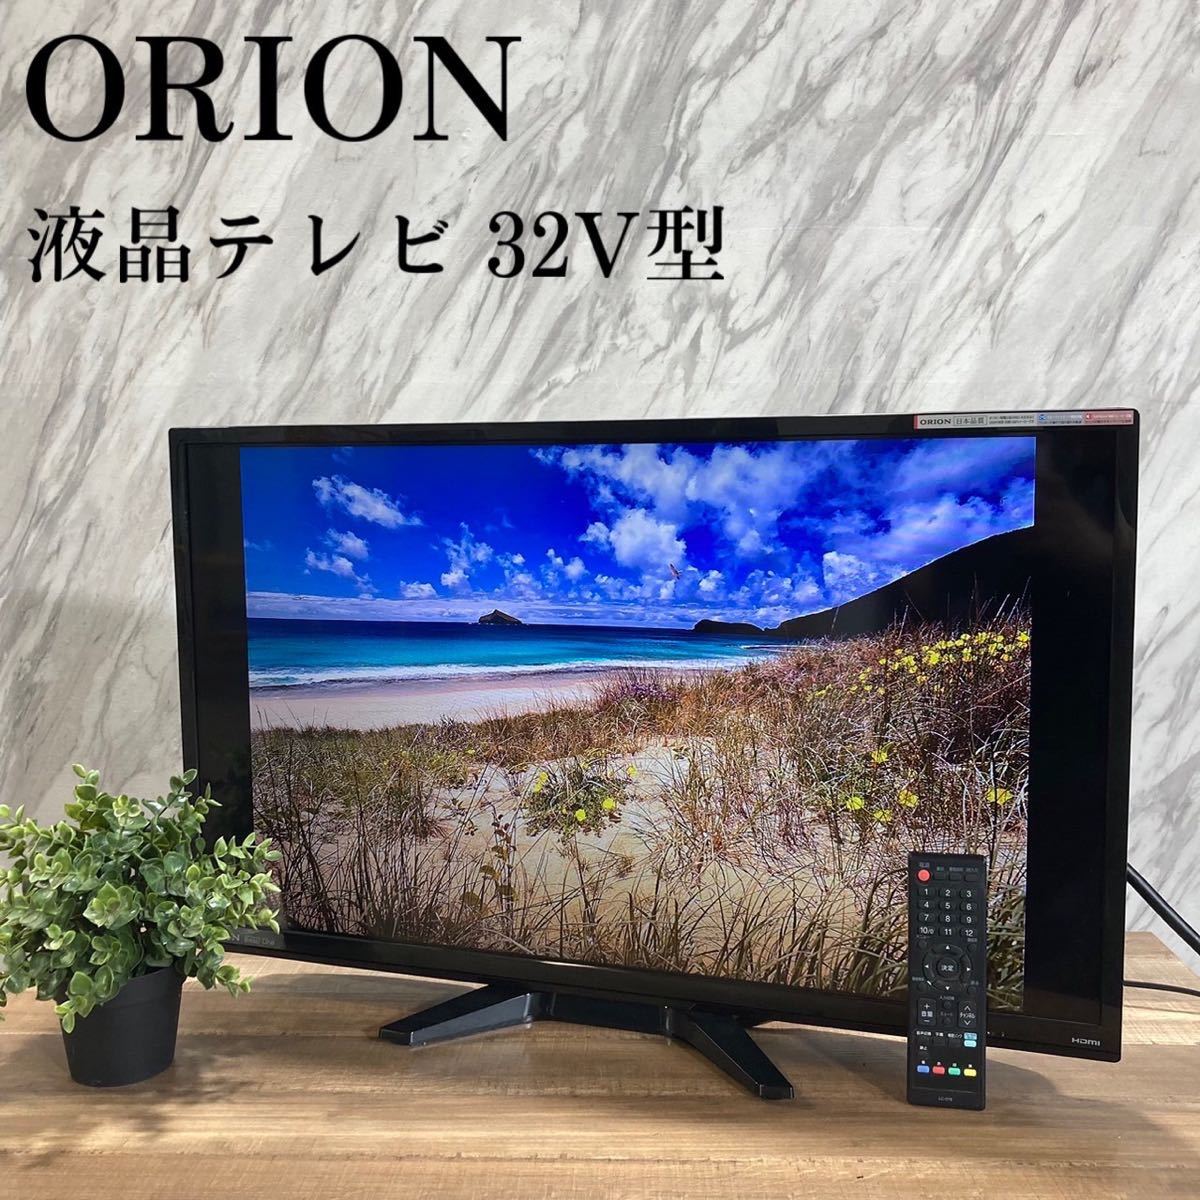 ORION オリオン 液晶テレビ NHC-321B 32V型 家電 L573